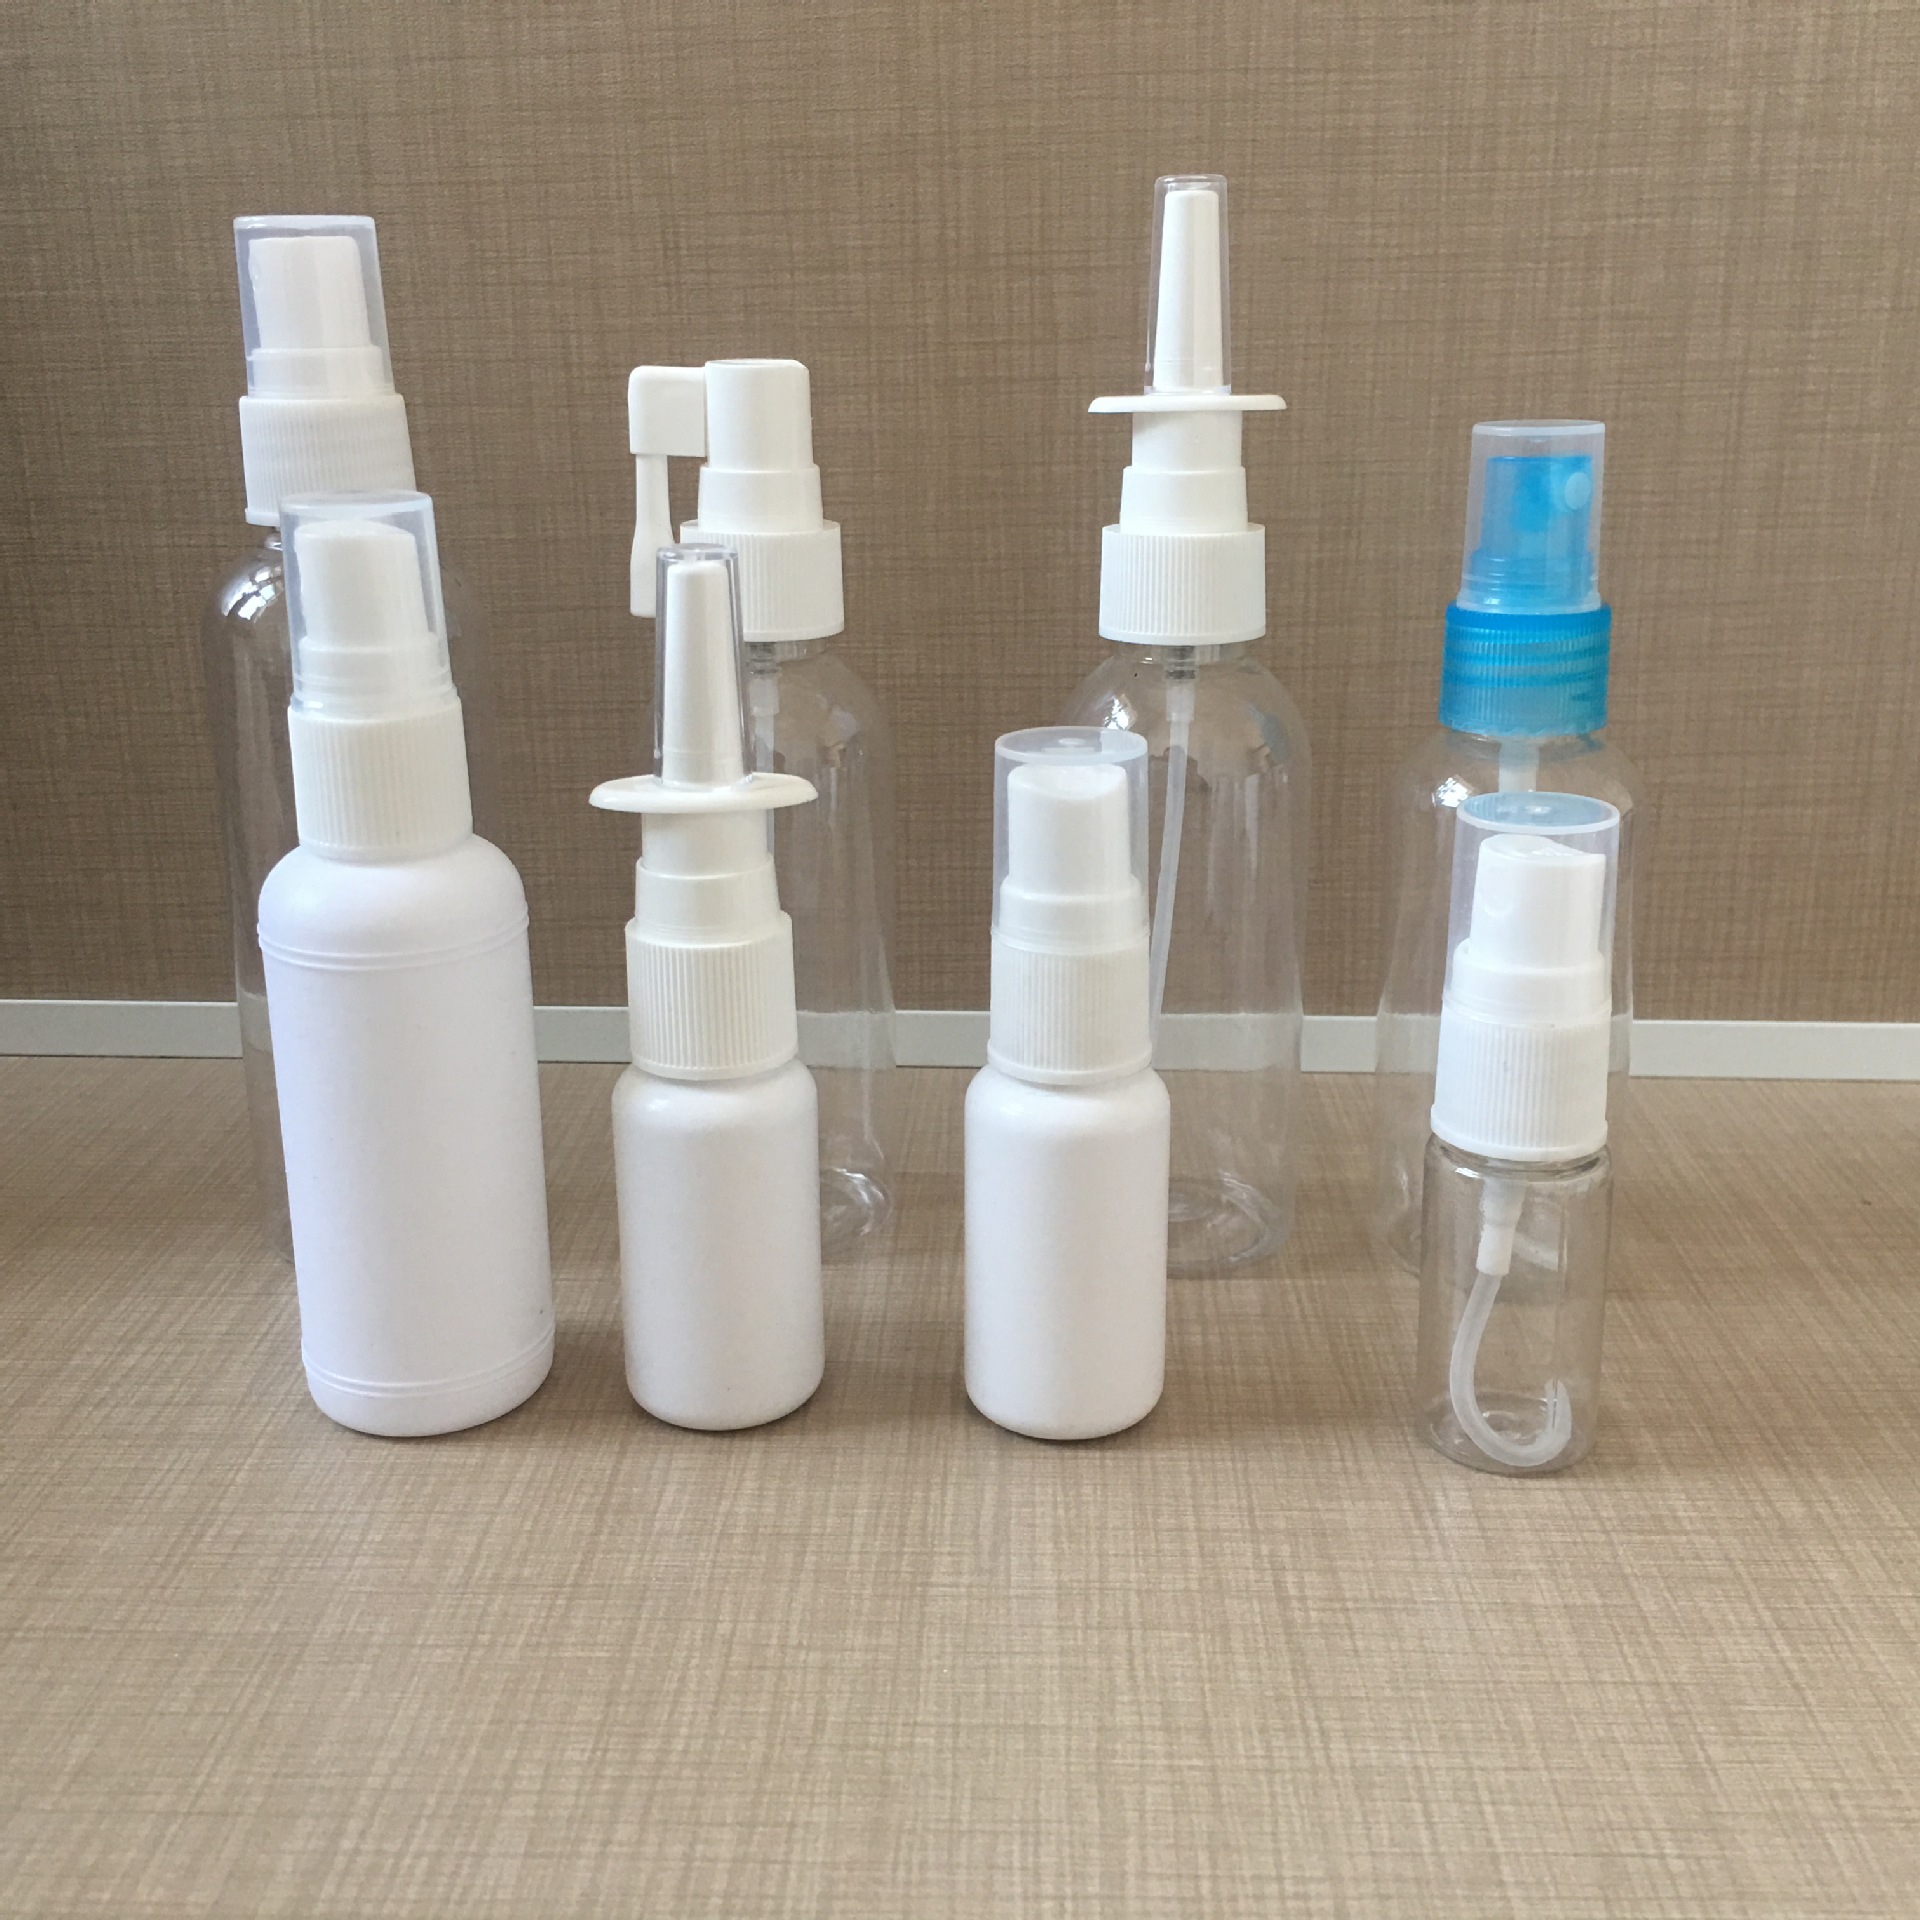 厂家直销2g药管塑料管透明塑料管医用塑料管现货供应示例图13